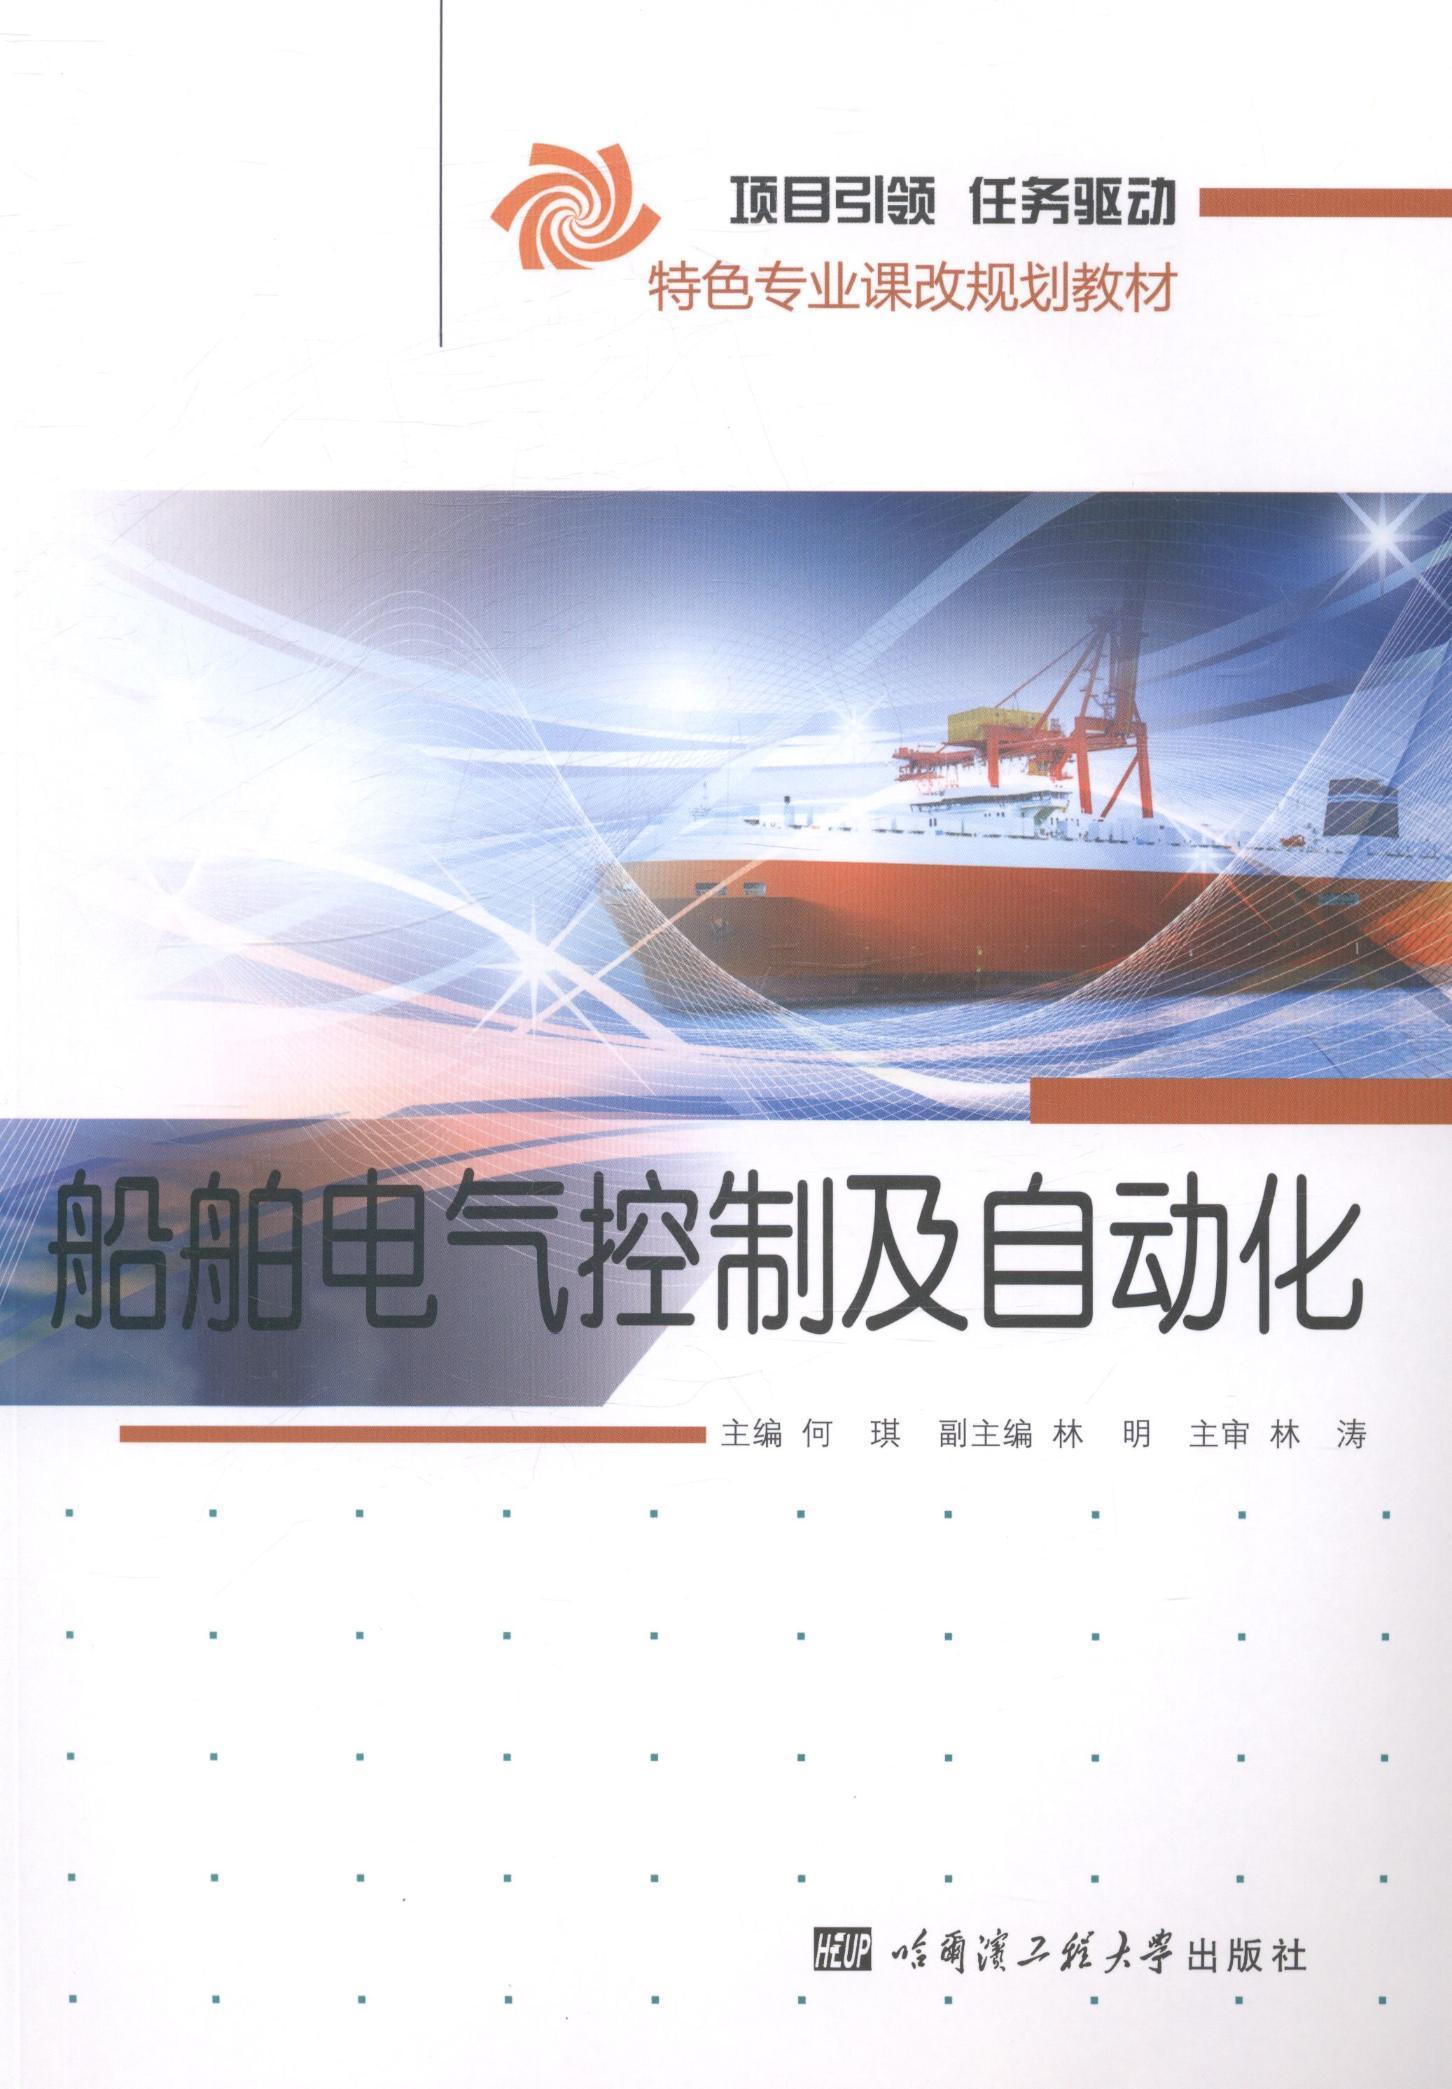 [rt] 船舶电气控制及自动化  何琪  哈尔滨工程大学出版社  教材  船舶电气控制系统教材